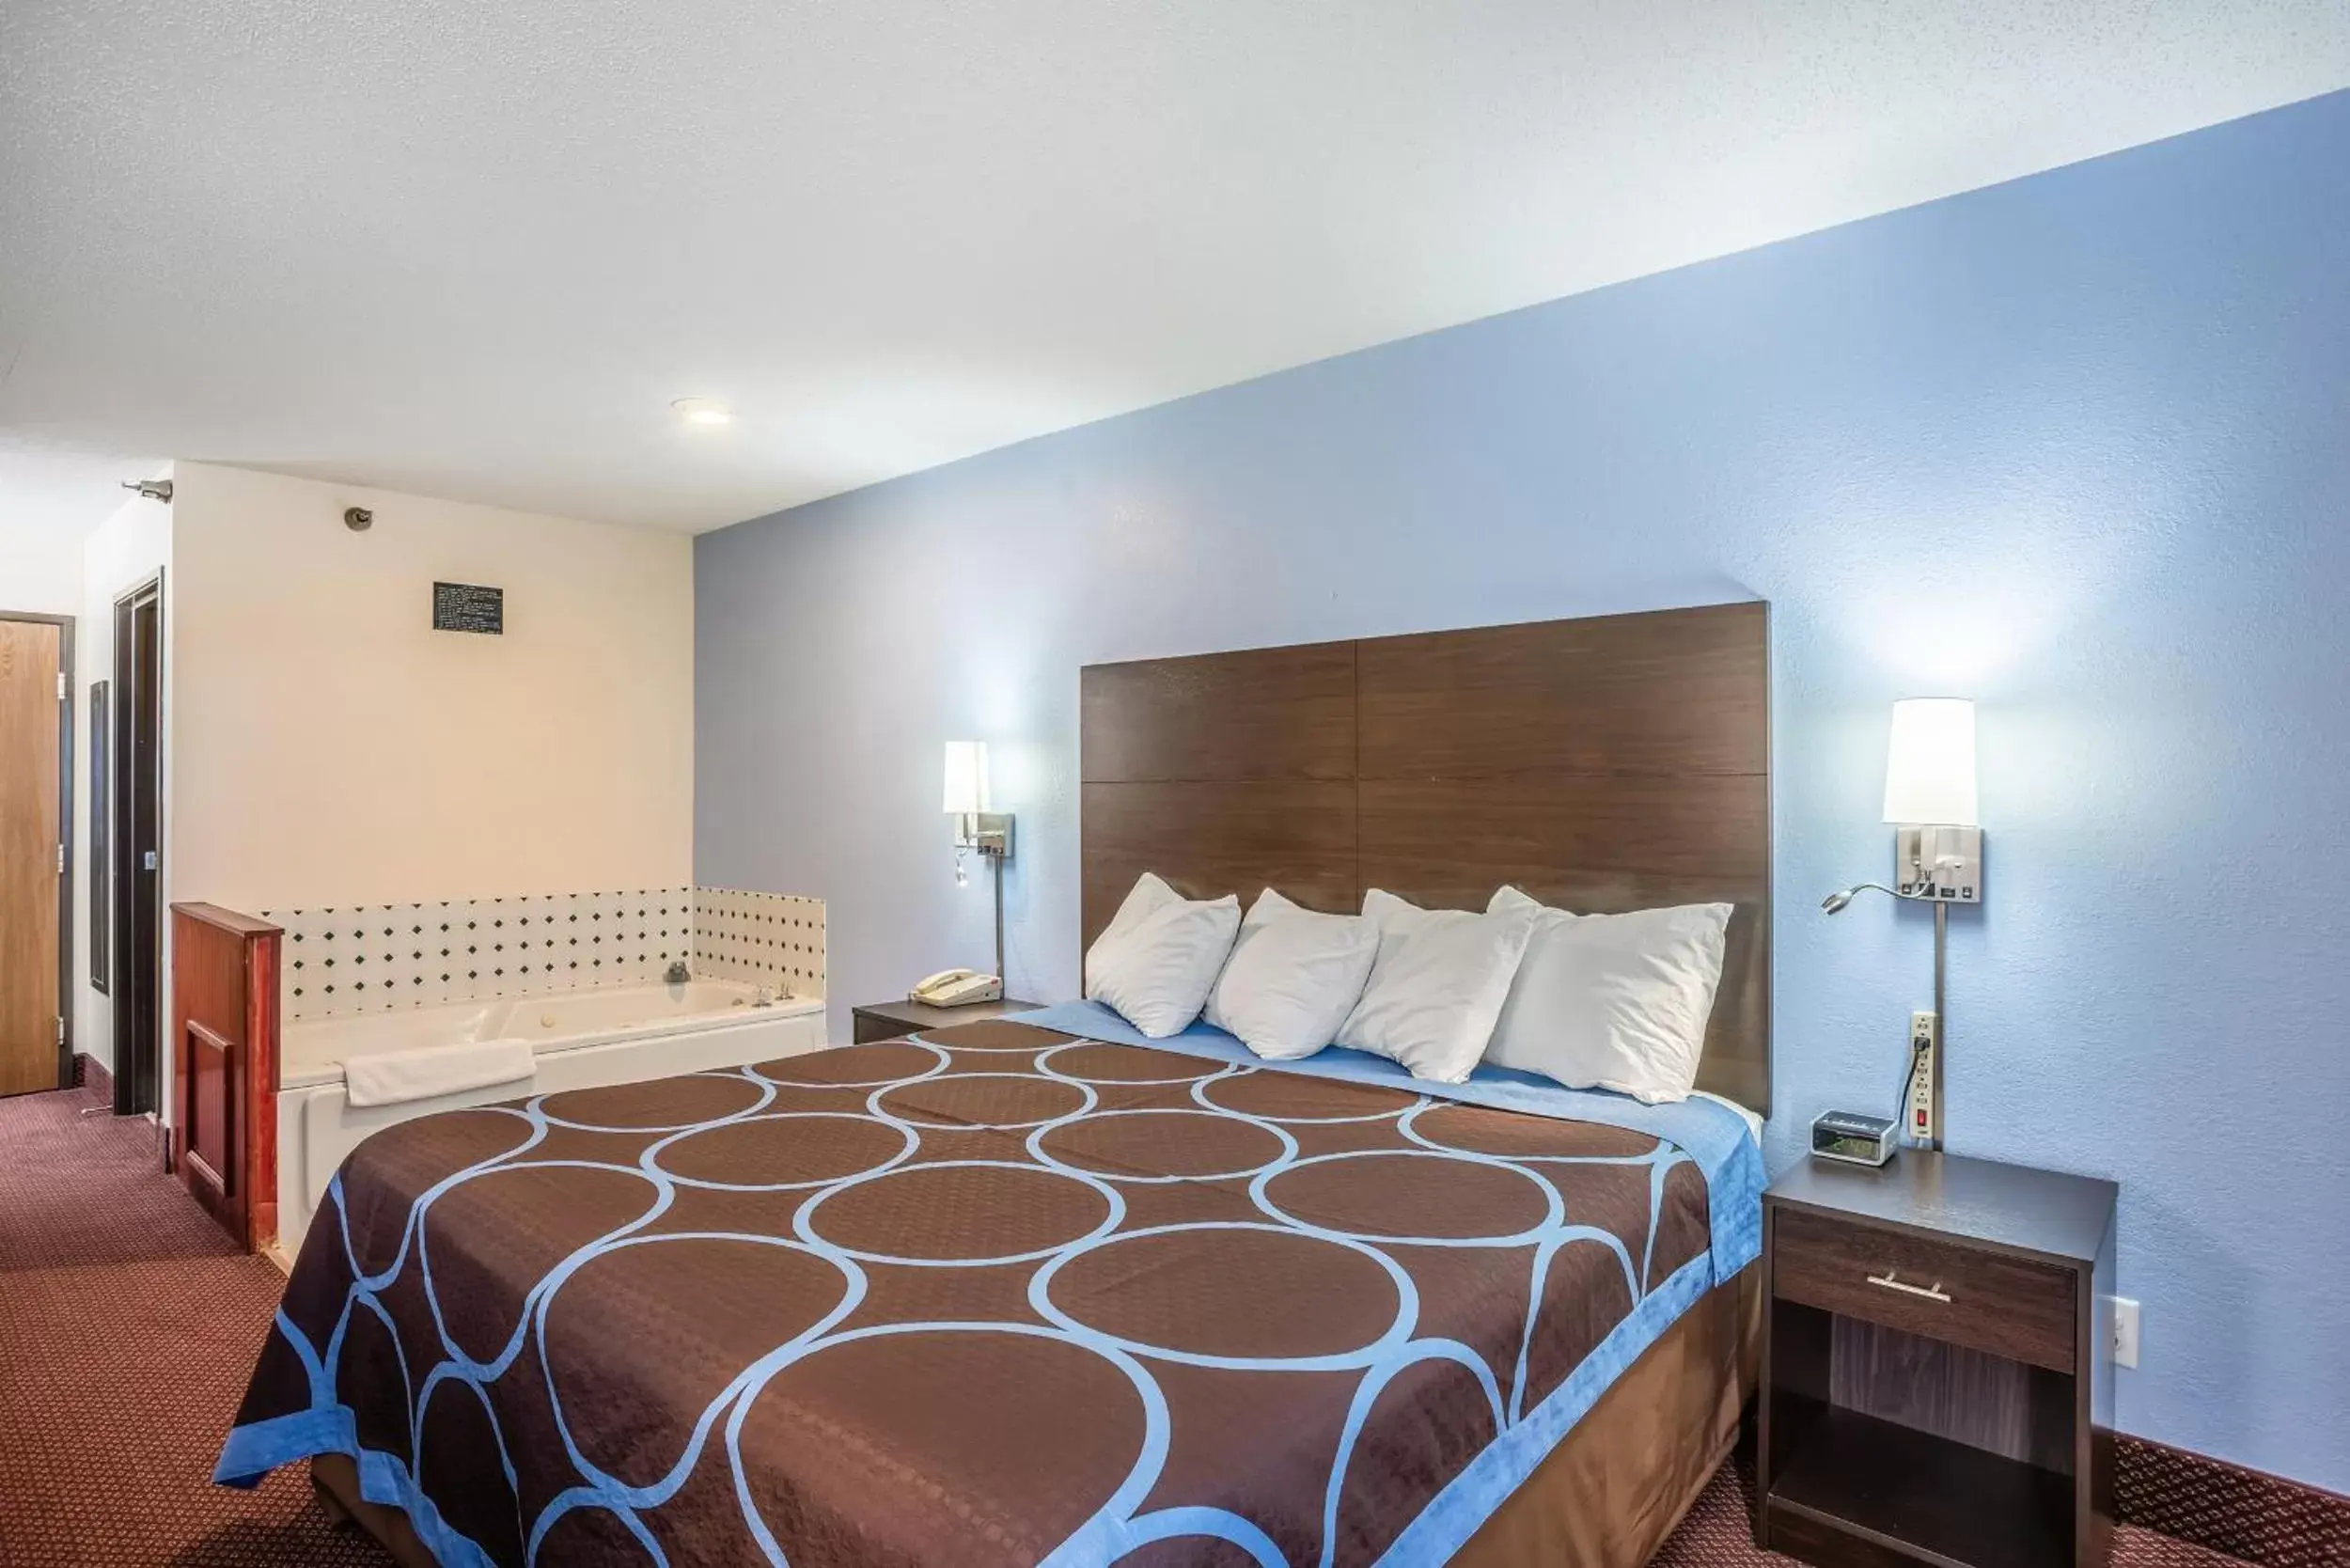 Bedroom, Bed in Americas Best Value Inn-Galesburg